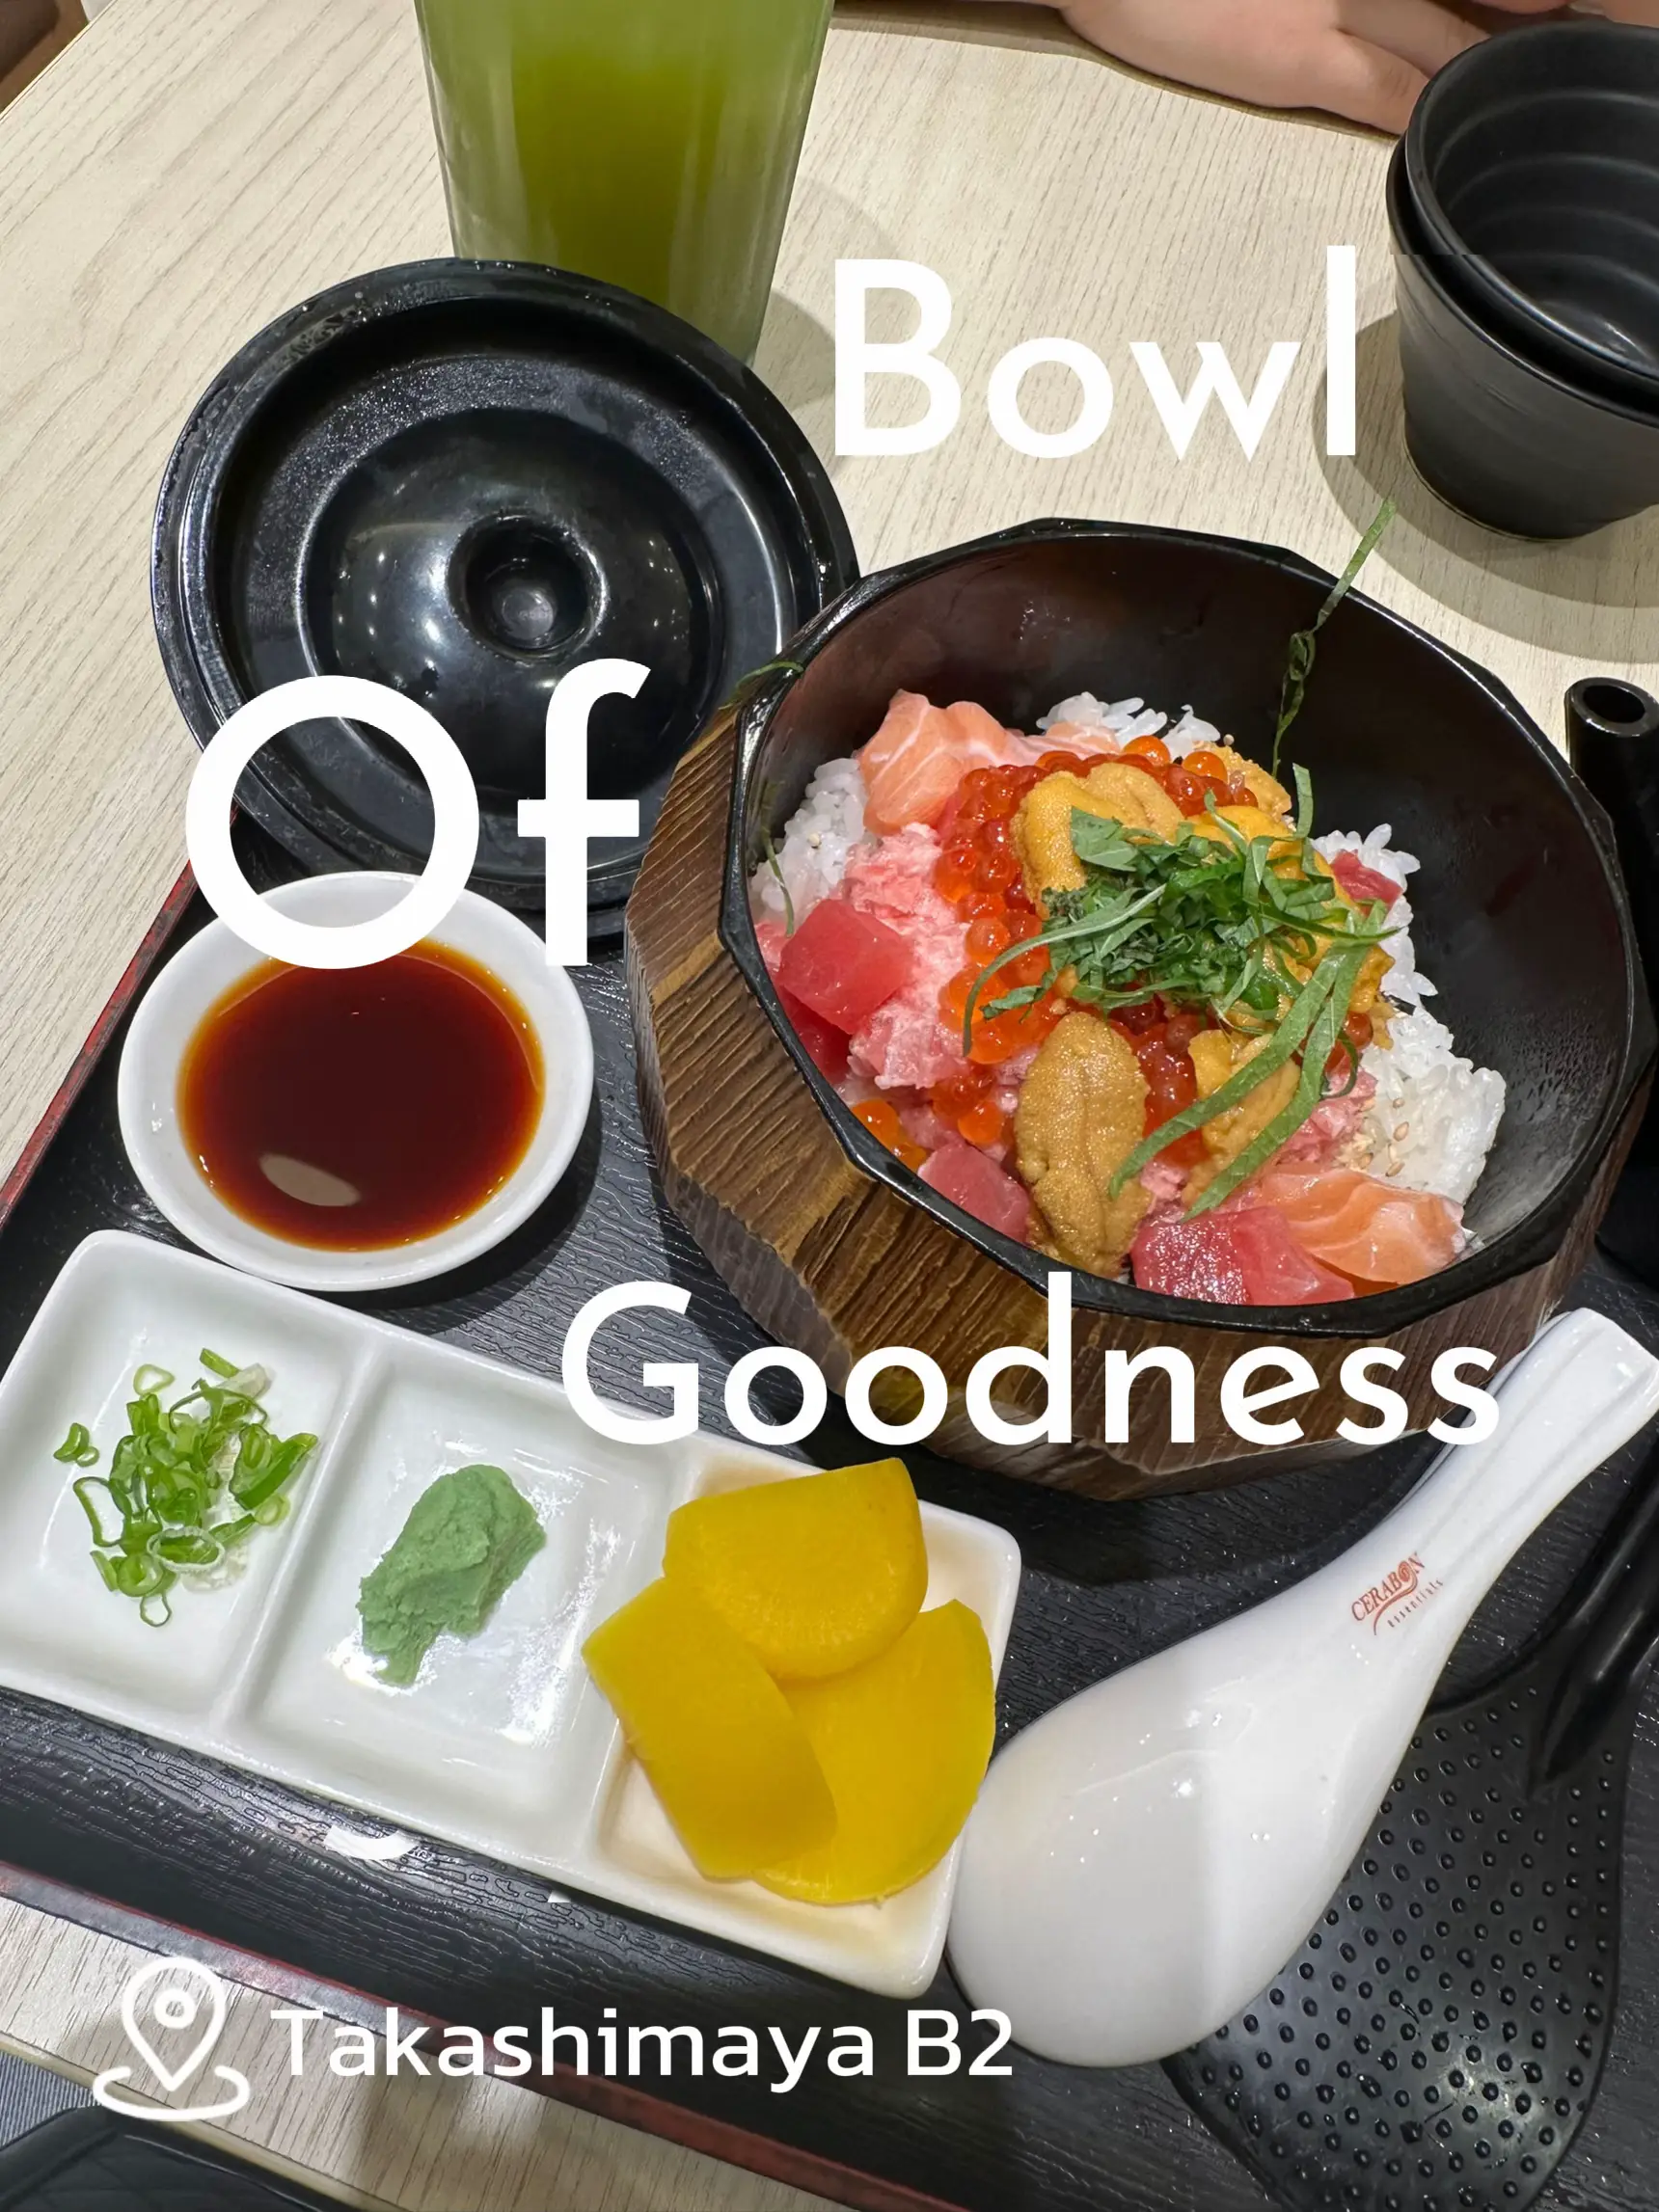 Sashimi Bowl - Lemon8 Search